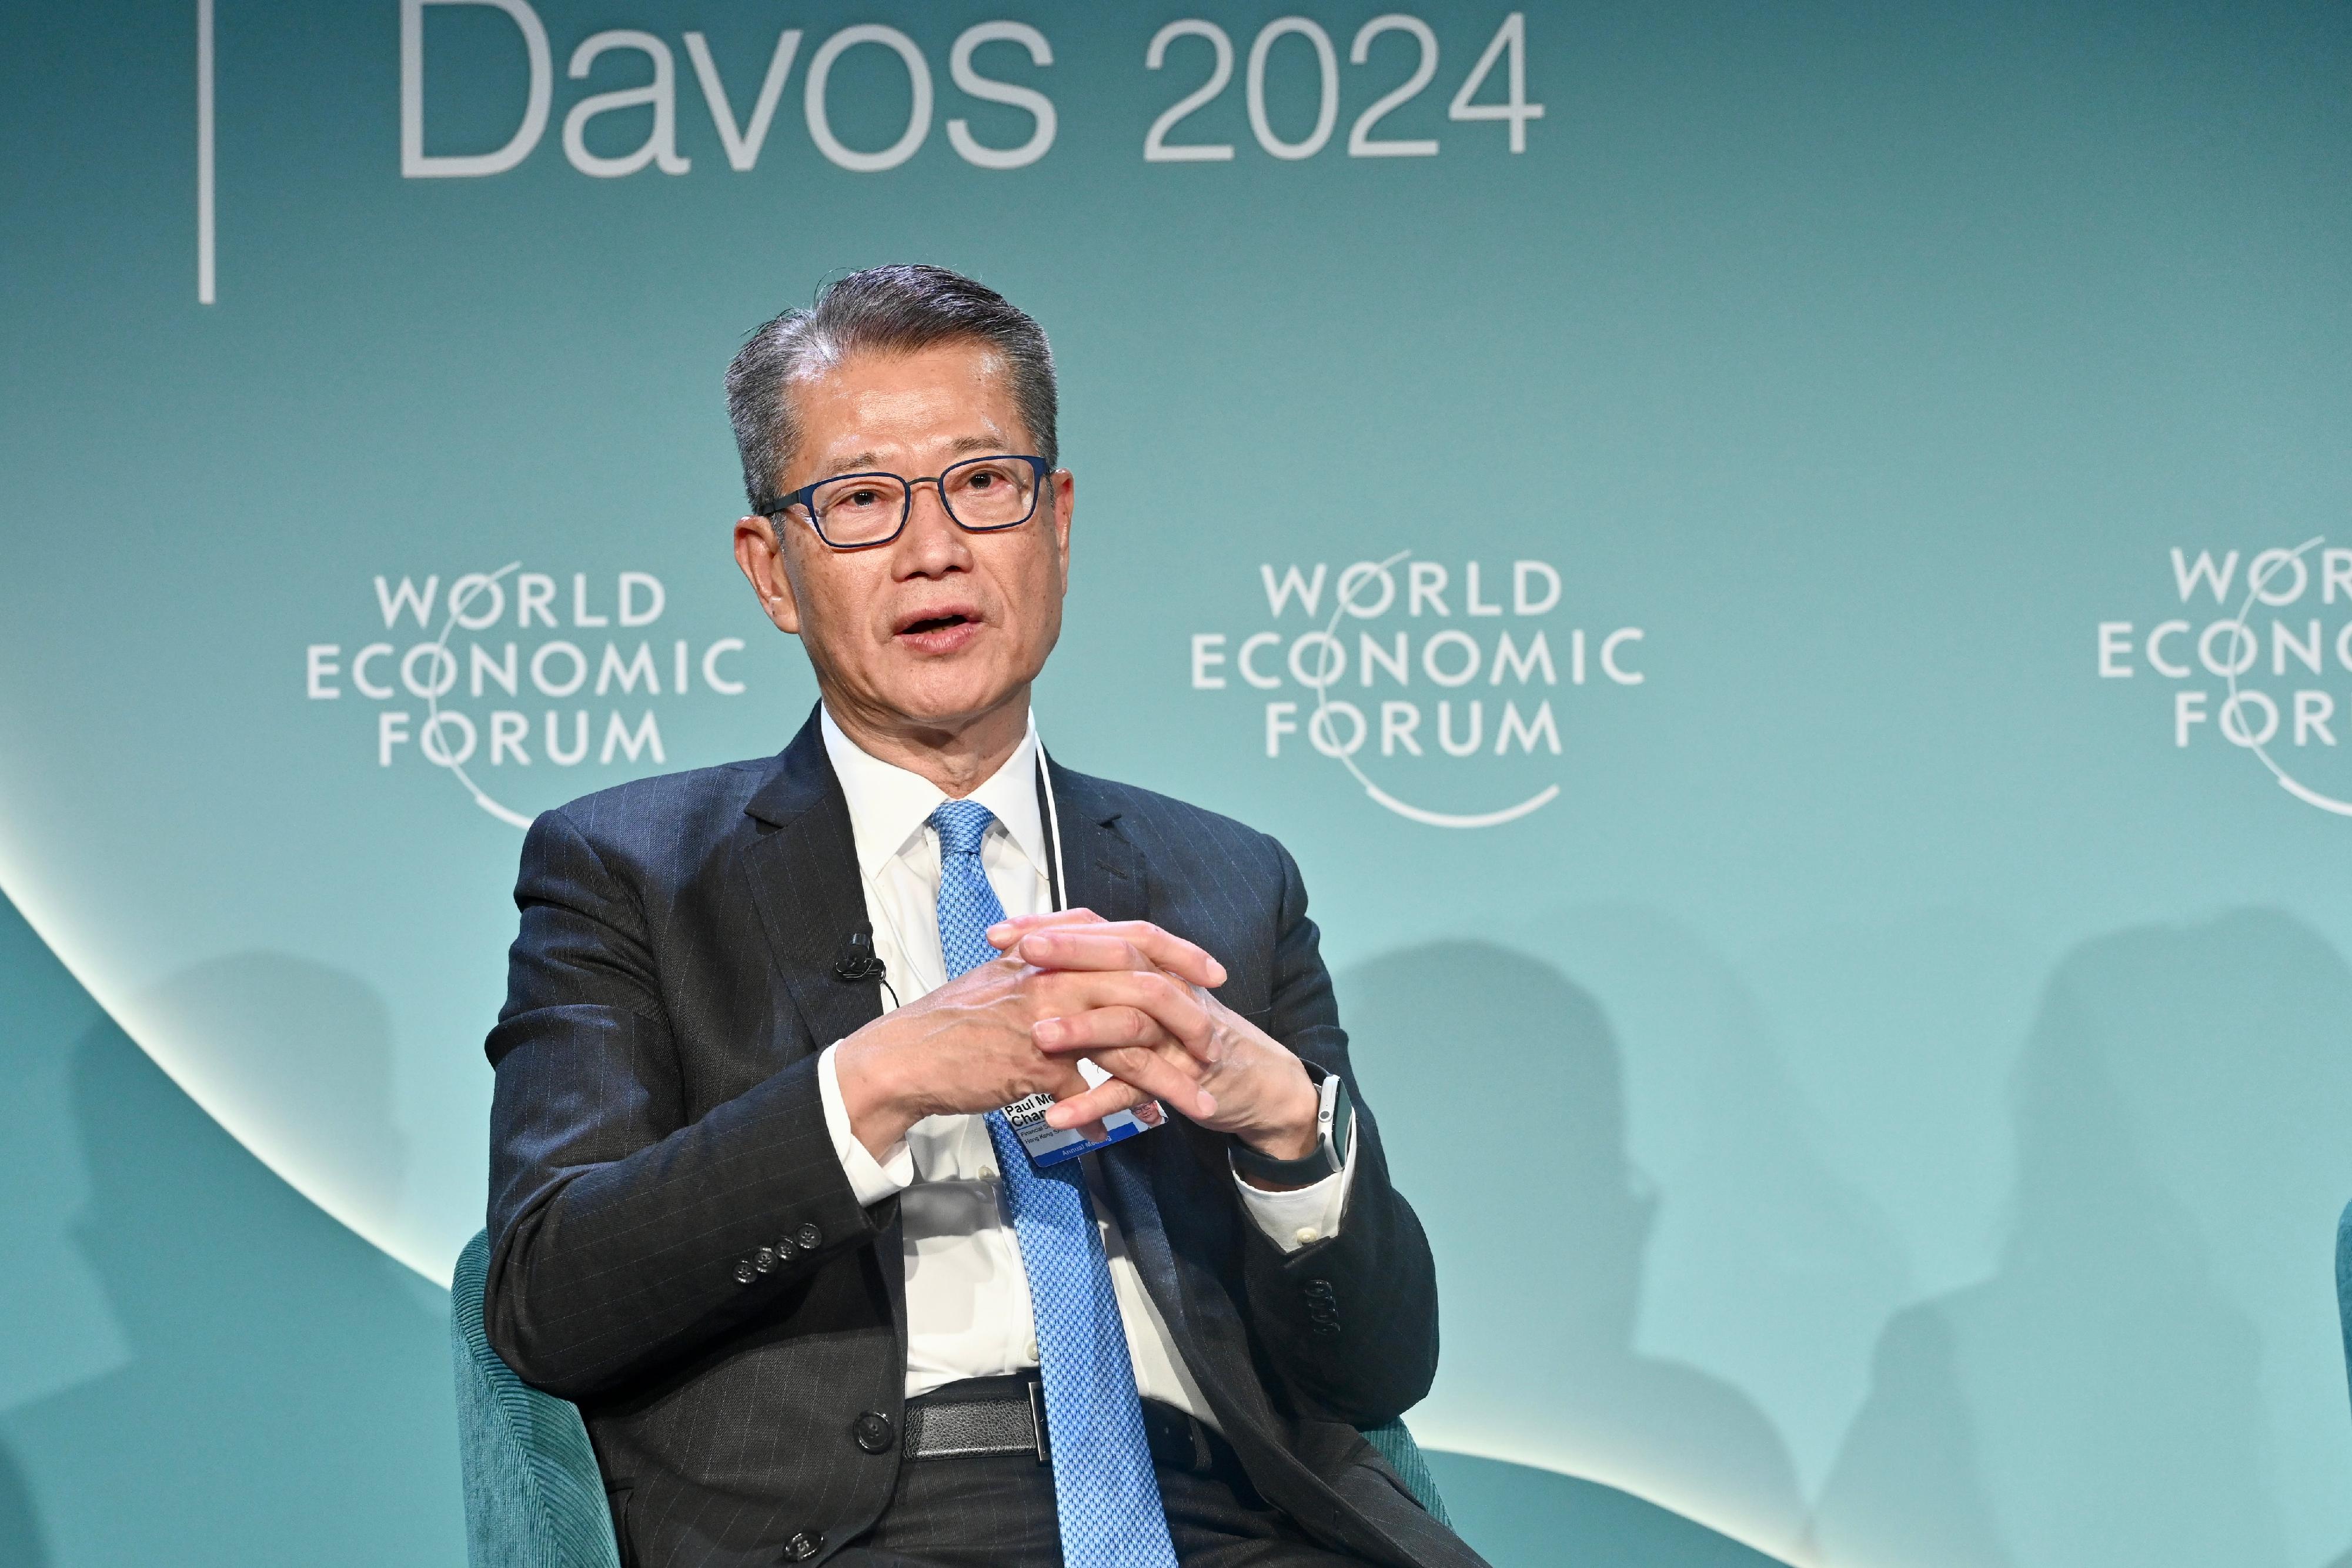 財政司司長陳茂波昨日（達沃斯時間一月十八日）在瑞士達沃斯出席世界經濟論壇年會期間，參與數字資產的專題討論會。圖示陳茂波在會上發言。